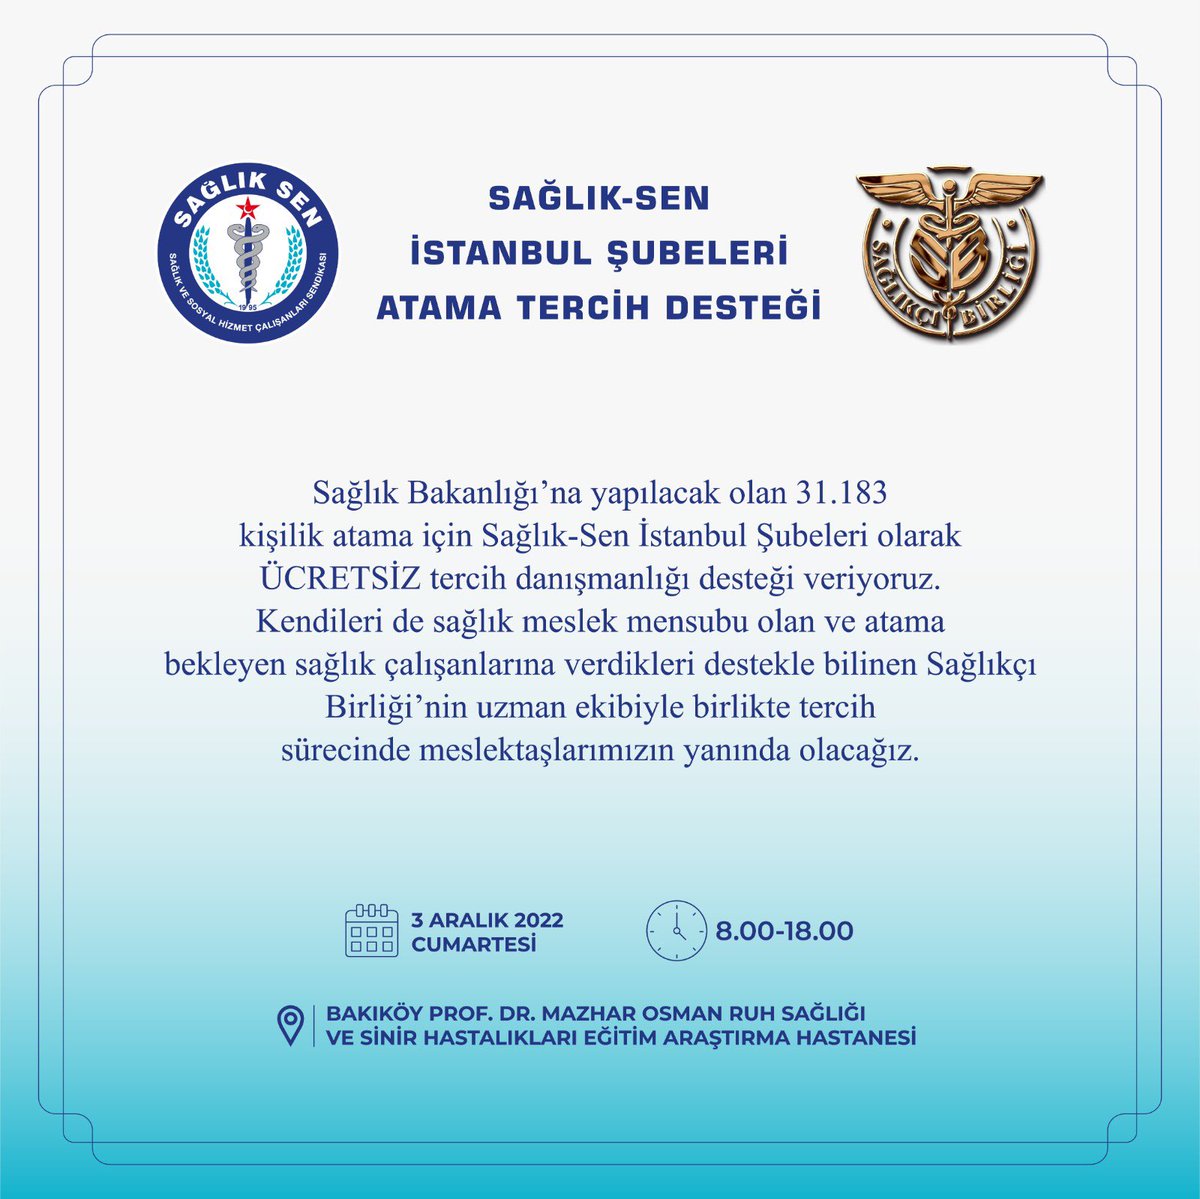 Sağlık Bakanlığı’na yapılacak olan 31.183 kişilik atama için Sağlık-Sen İstanbul Şubeleri olarak ÜCRETSİZ tercih danışmanlığı desteği veriyoruz. @SaglikciBirligi’nin uzman ekibiyle birlikte tercih sürecinde meslektaşlarımızın yanında olacağız. @ZaferCaner10